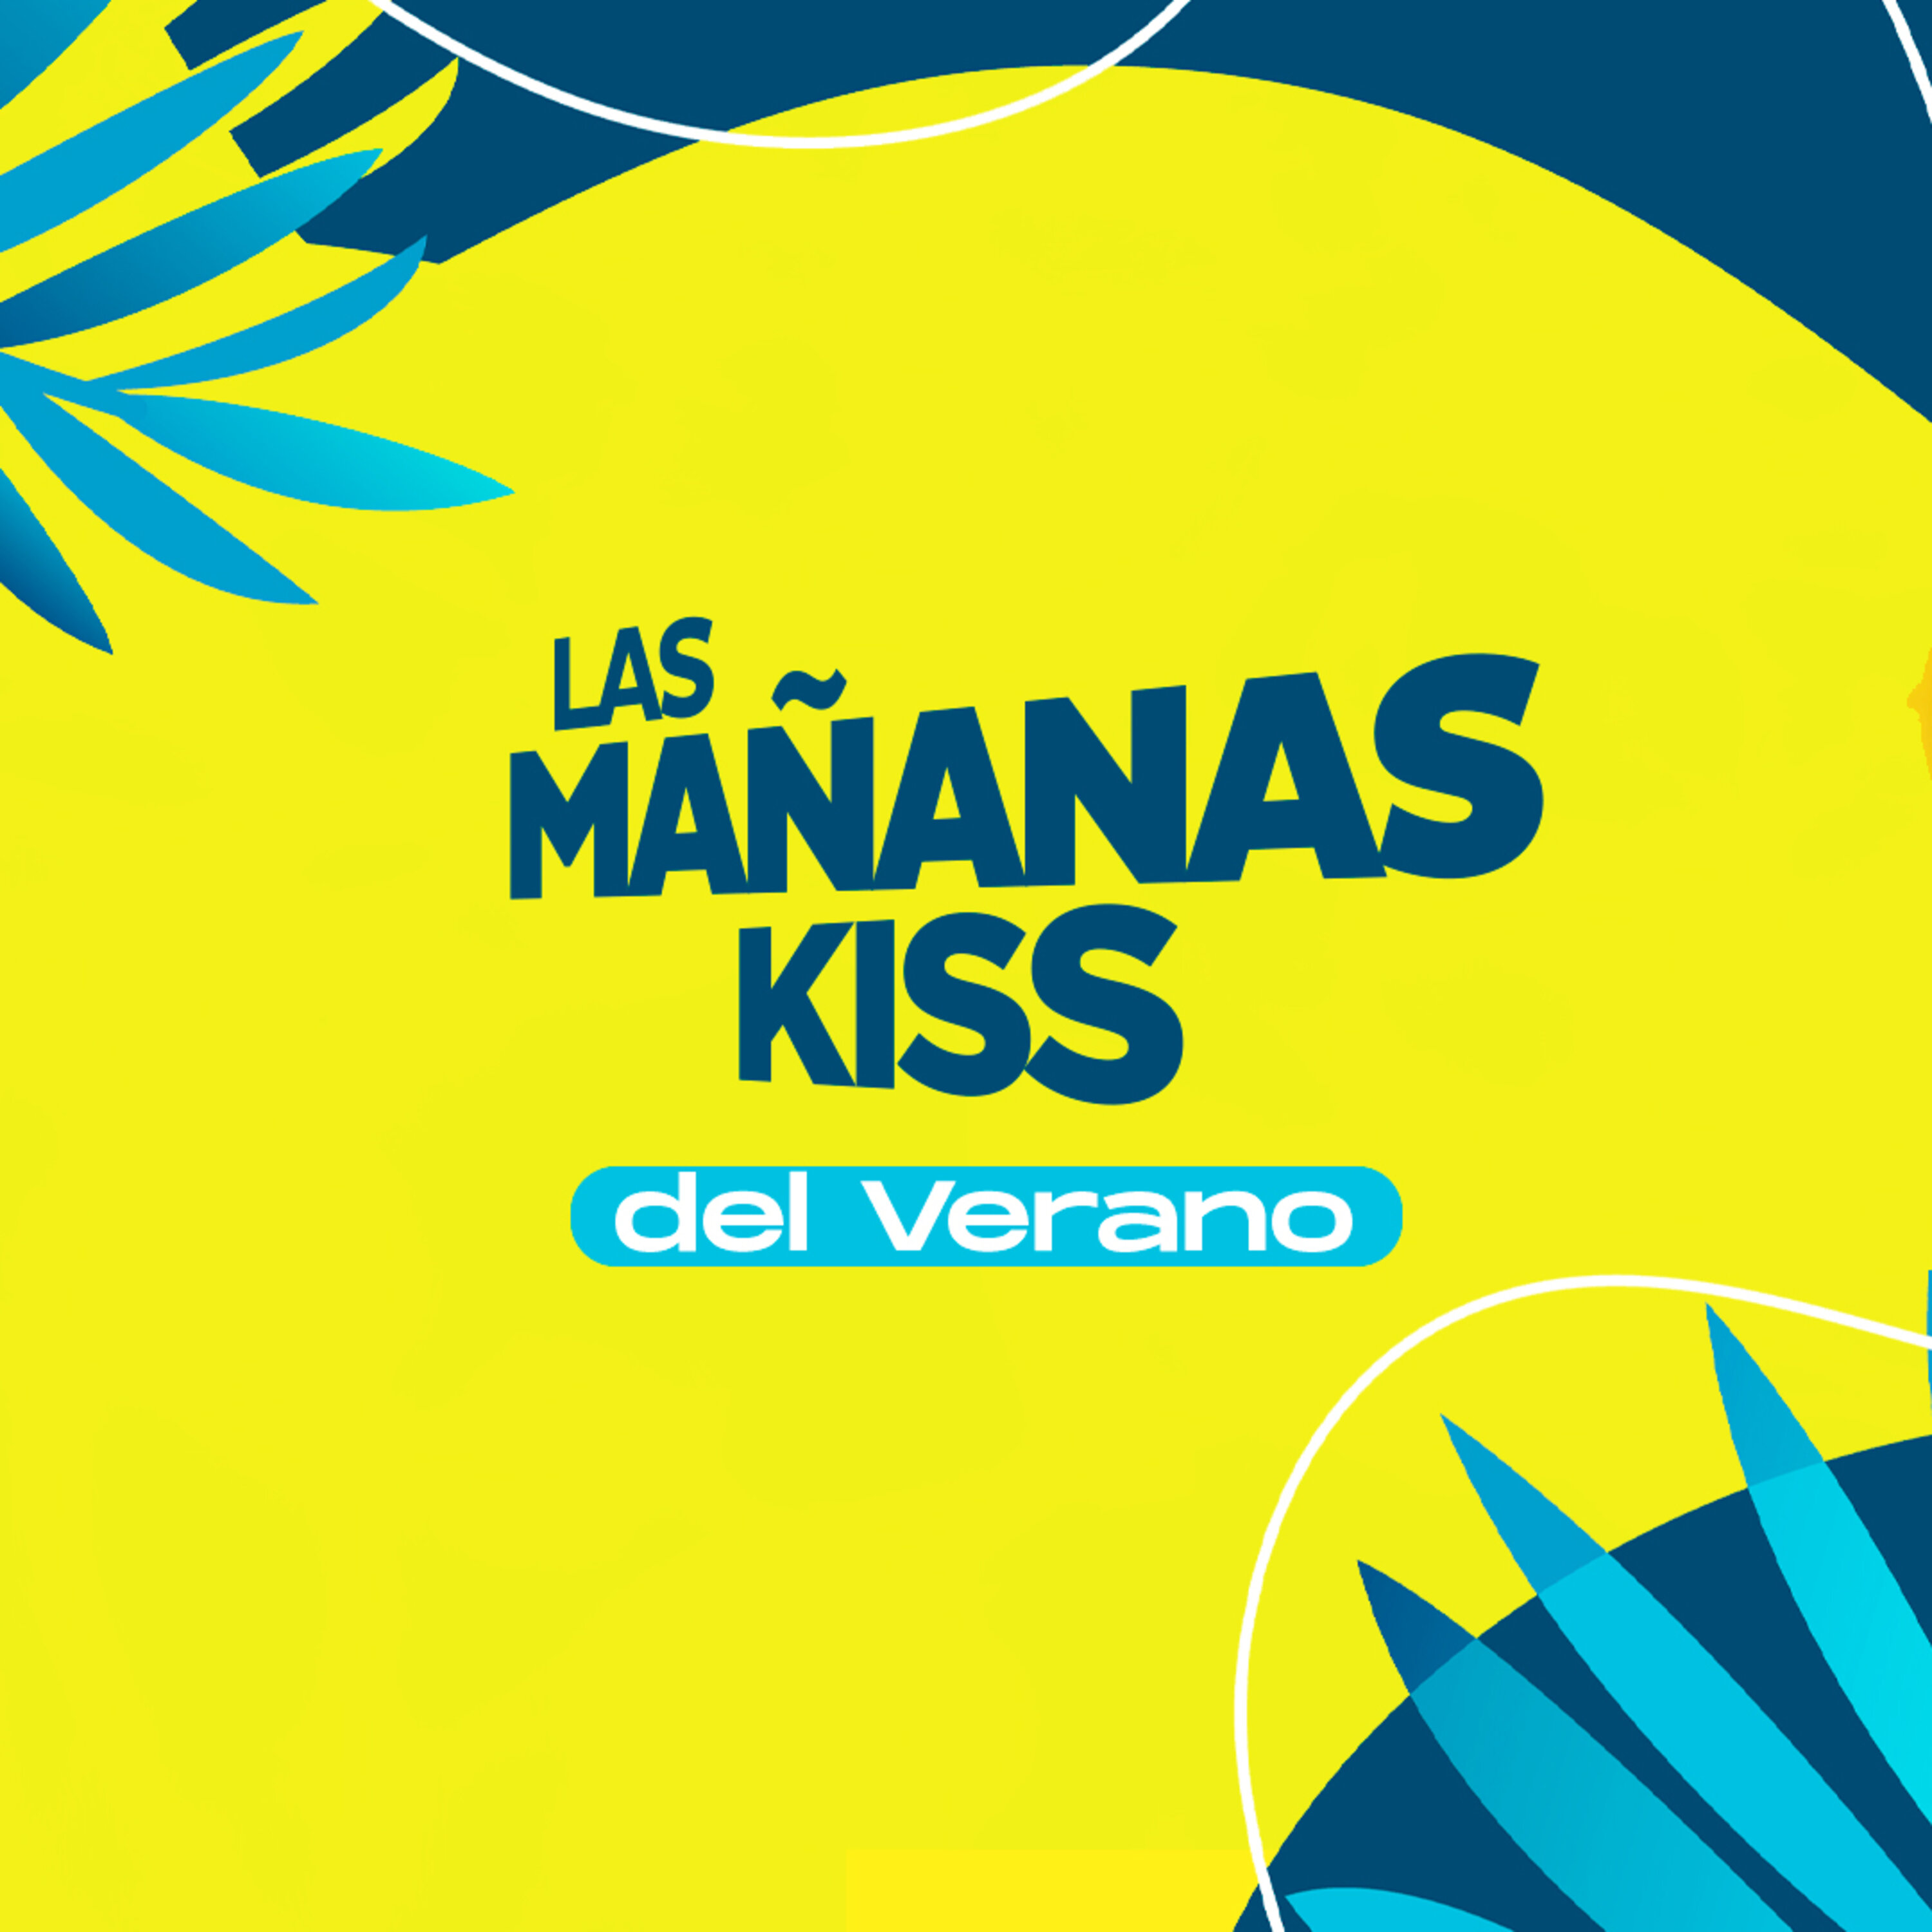 Las Mañanas KISS del Verano (01/08/2022 - 08-09h)